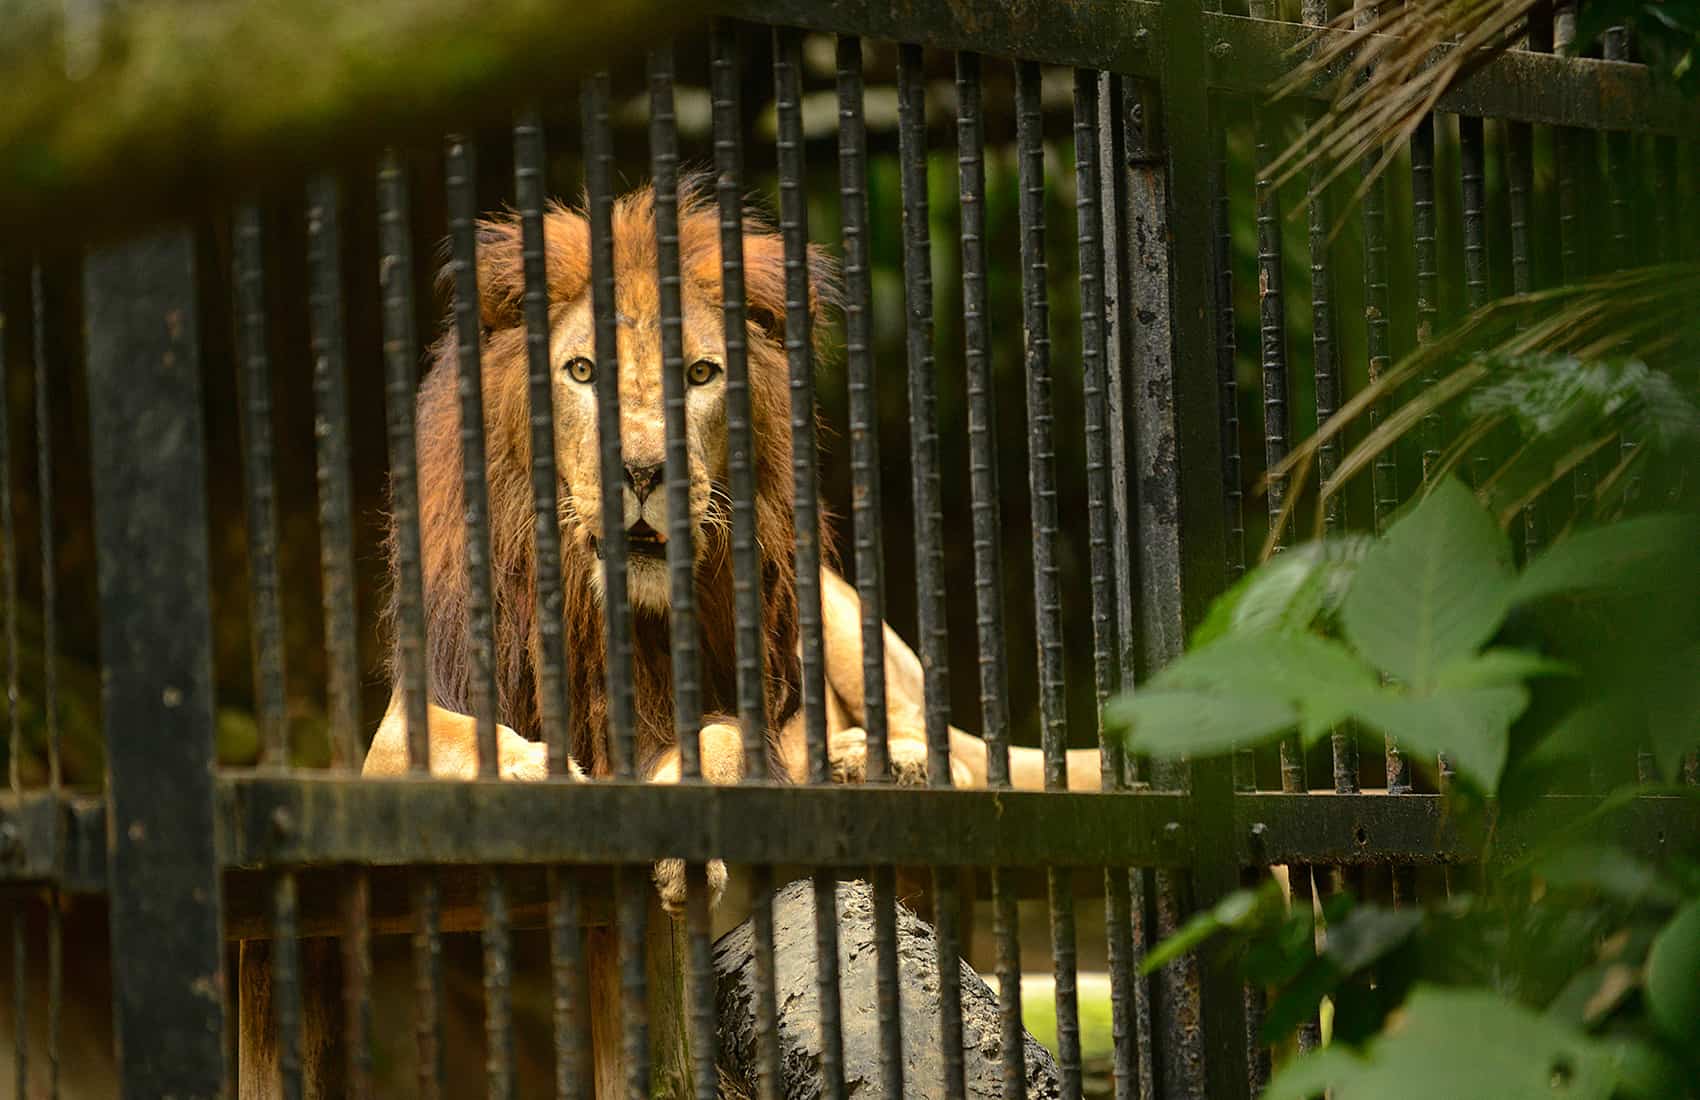 Kivu the lion was born in captivity. He lives at the Simón Bolívar Zoo in San José.